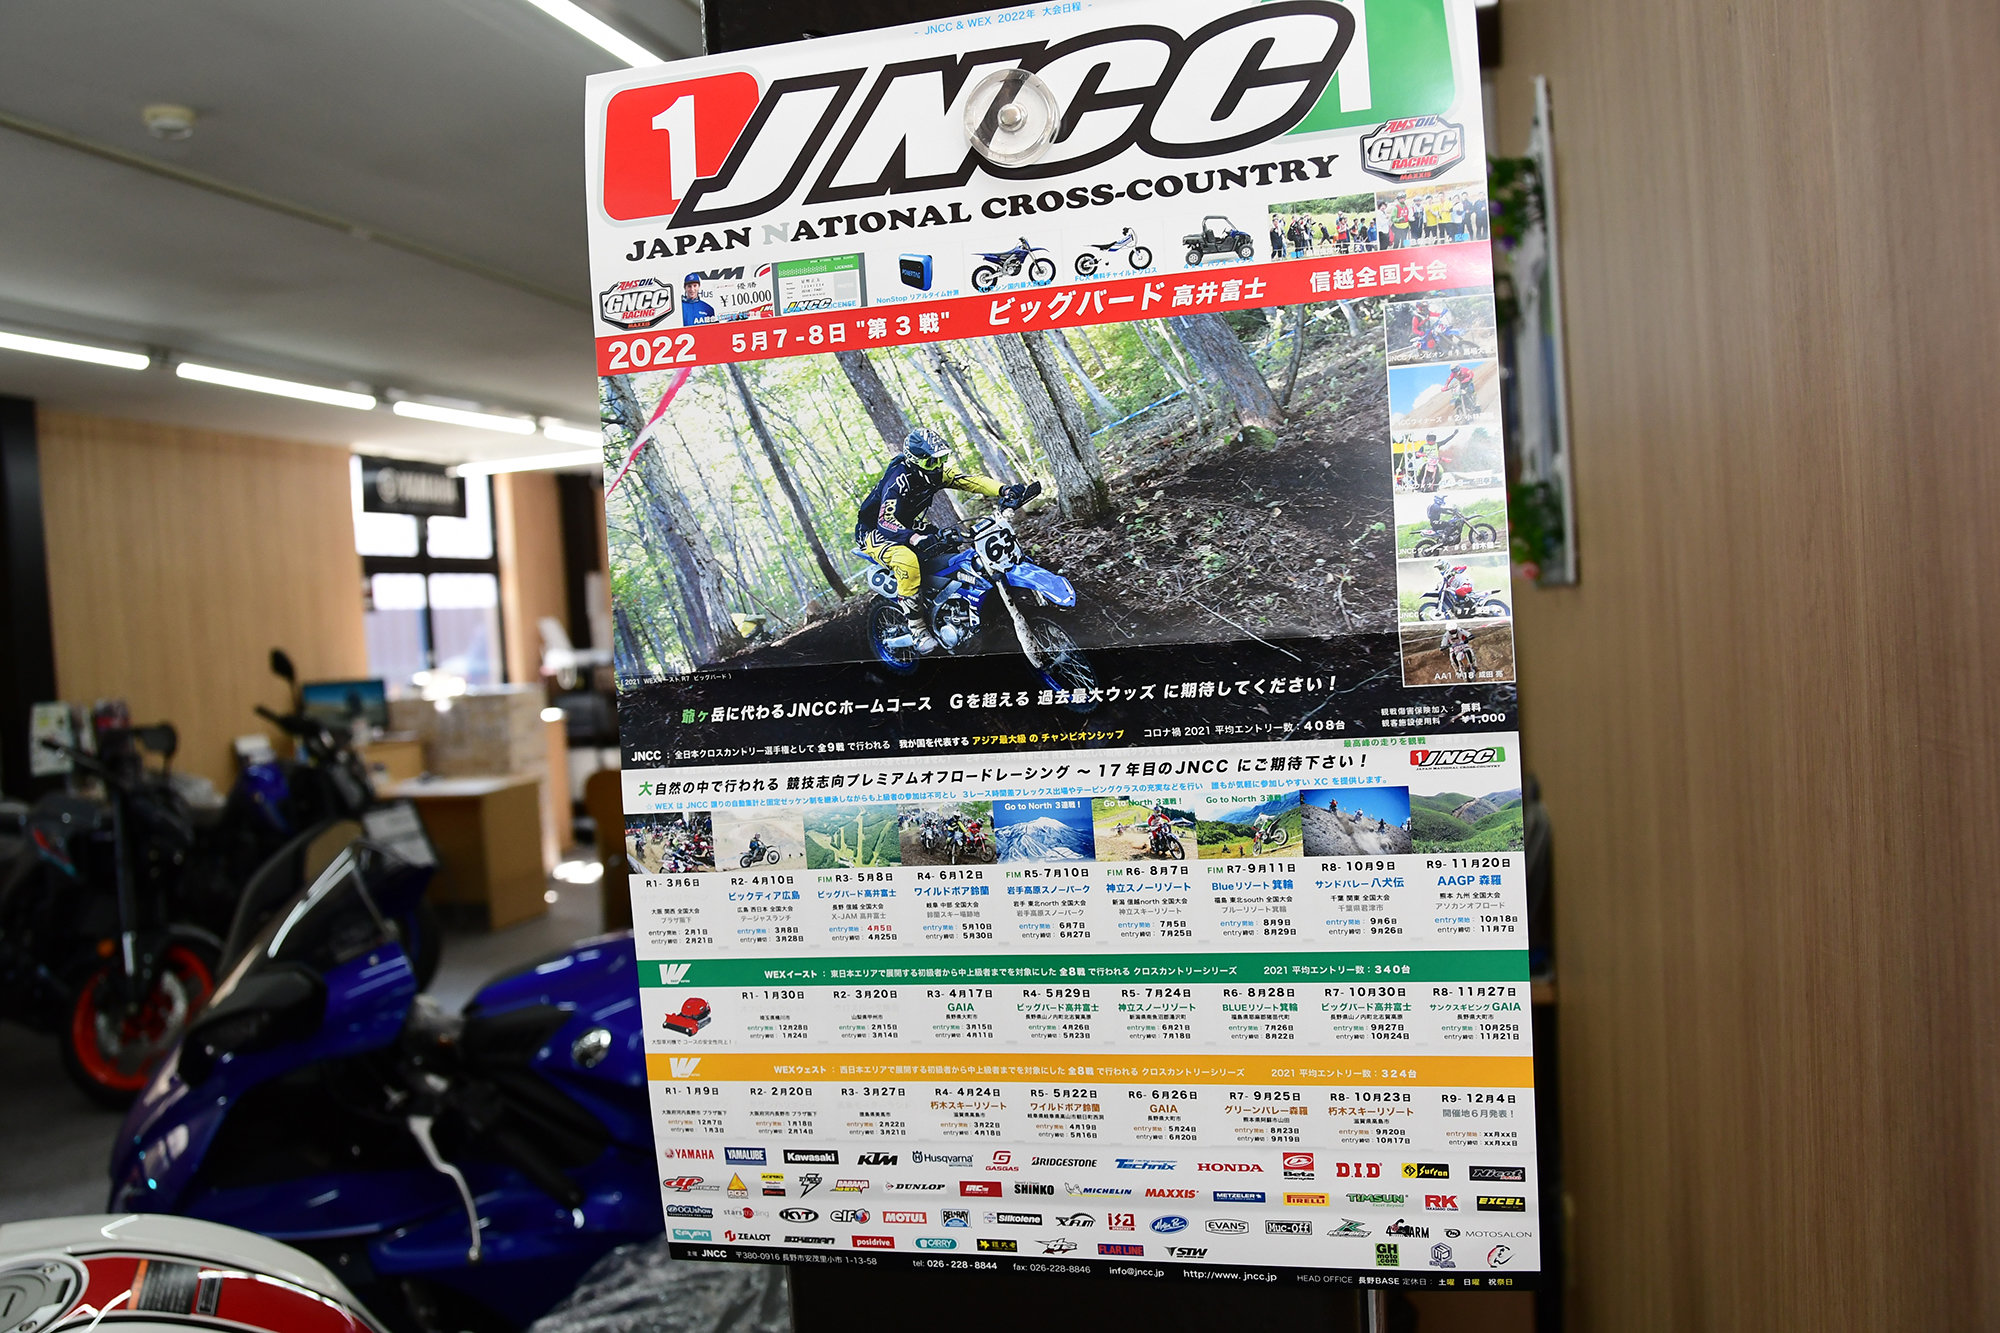 YSP富山さんは、JEC（全日本エンデューロ選手権）やJNCC（全日本モーターサイクルクロスカントリー選手権）にエントリーするなど、エンデューロレースが大好きなショップです。